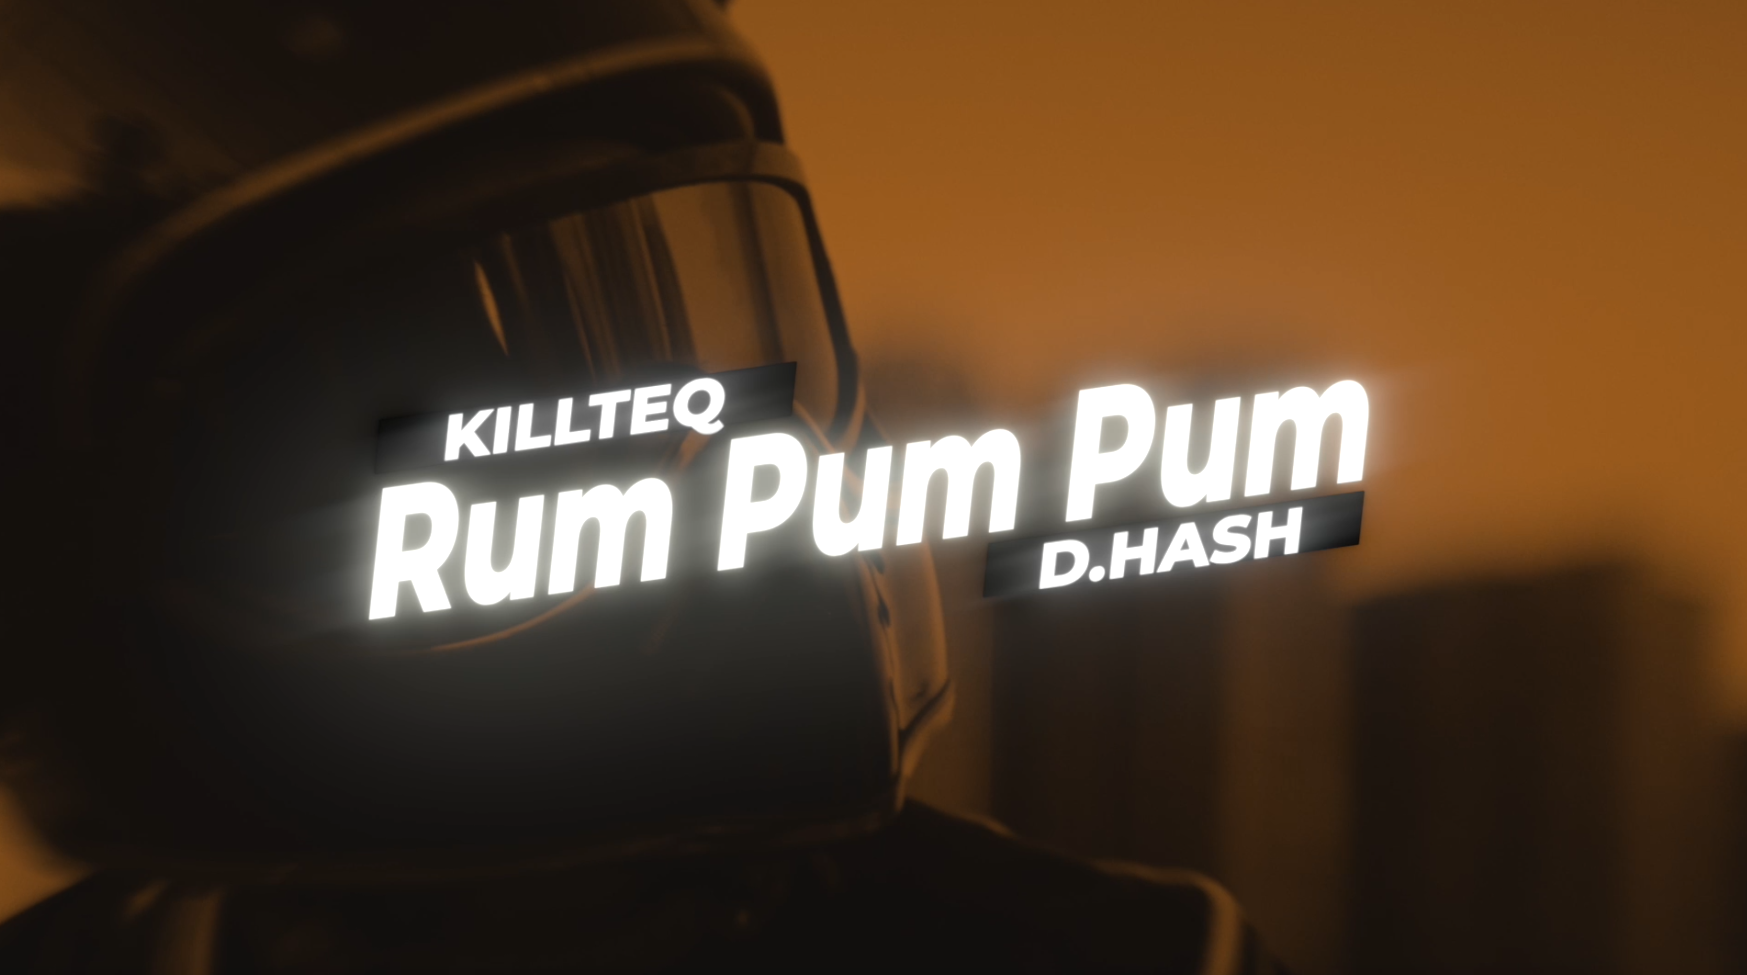 KILLTEQ, D.HASH - Rum Pum Pum